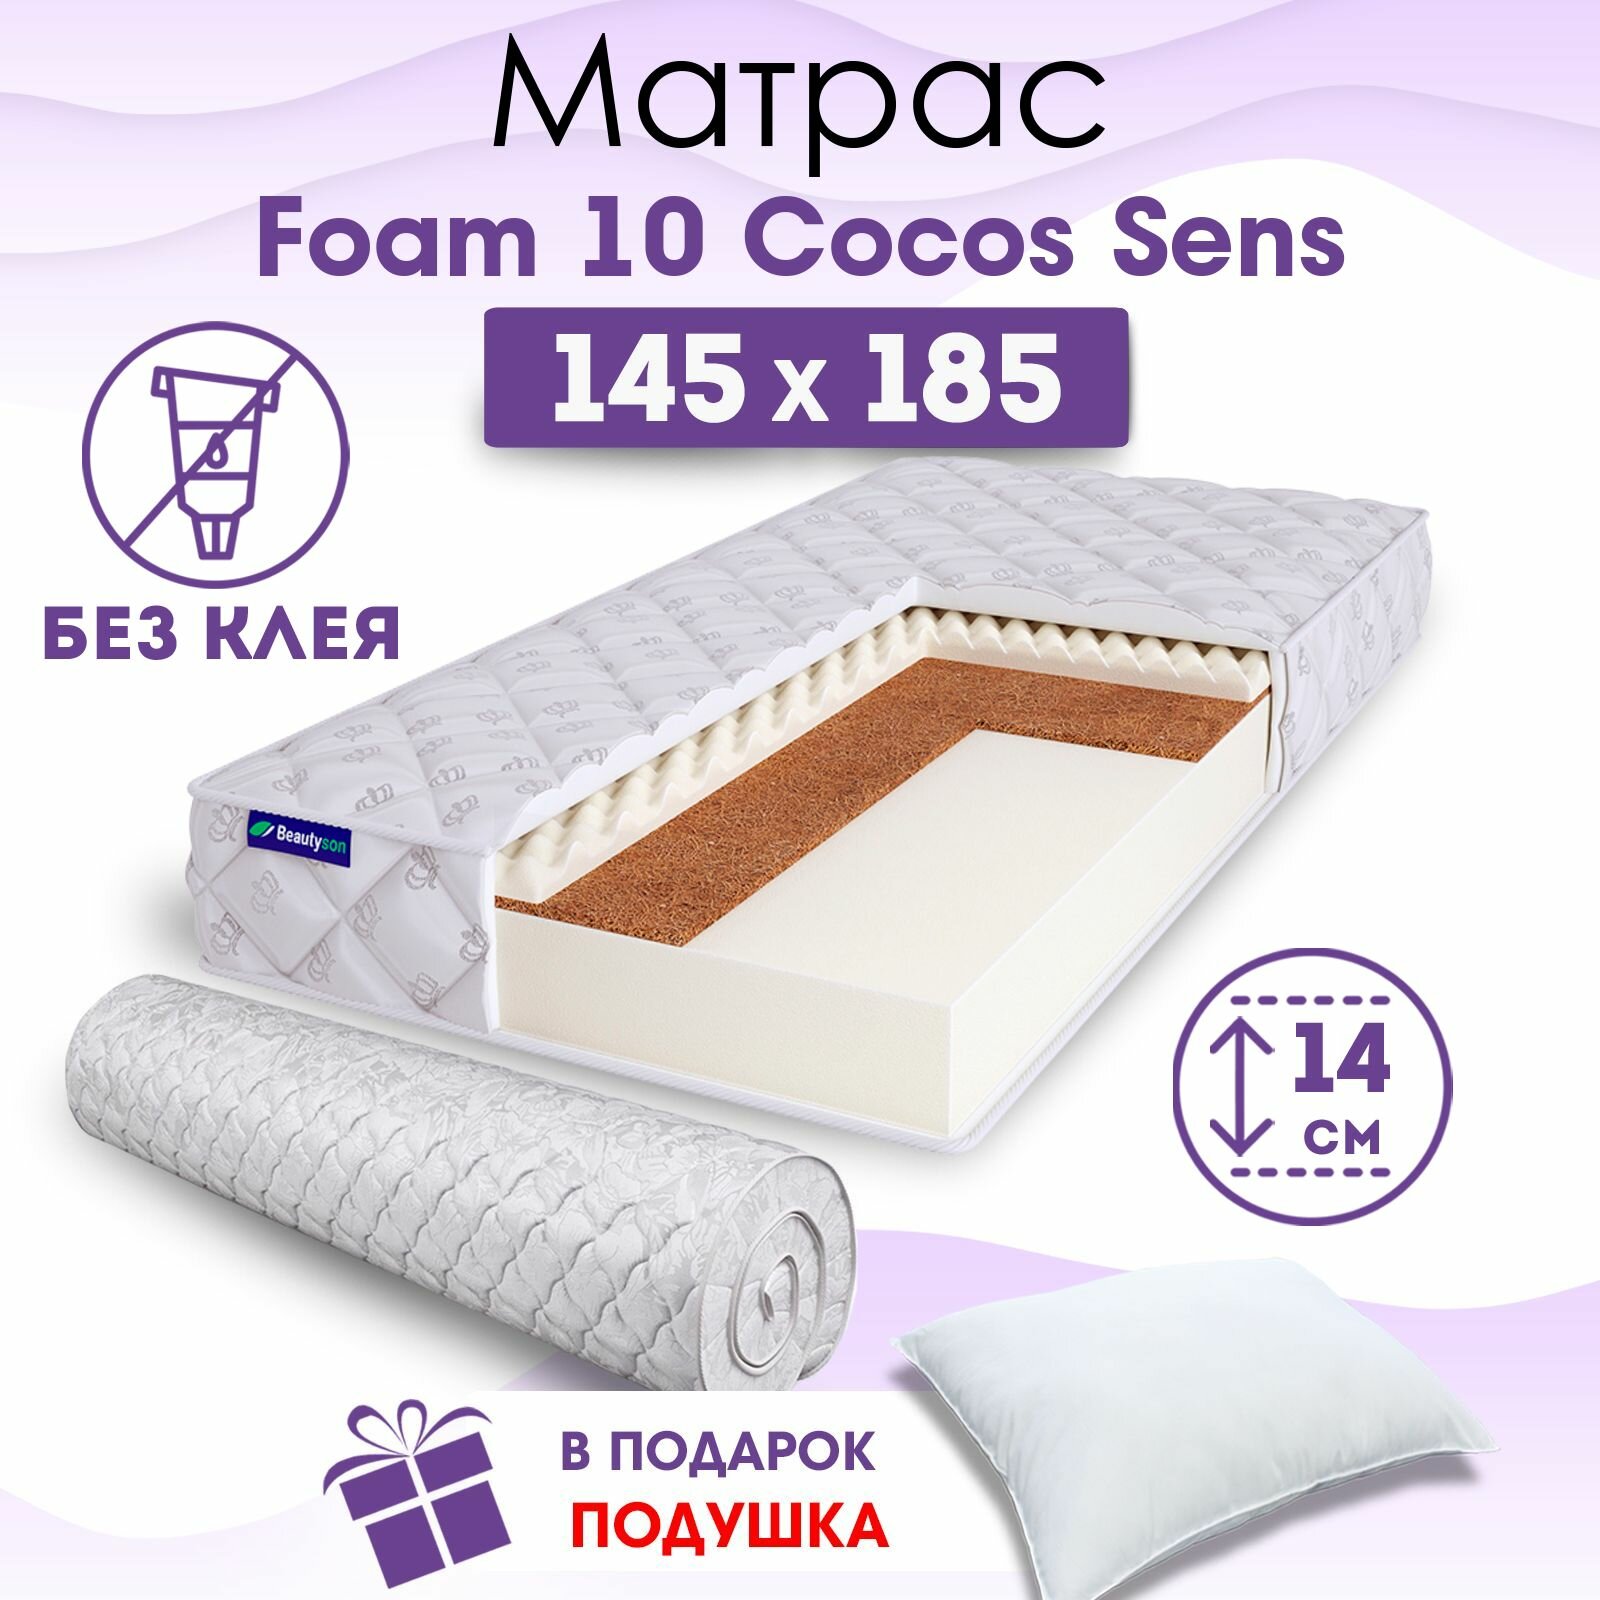 Ортопедический матрас Beautyson Foam 10 Cocos Sens без клея, 145х185, 14 см, беспружинный, двуспальный, на кровать, для дивана, умеренно мягкий